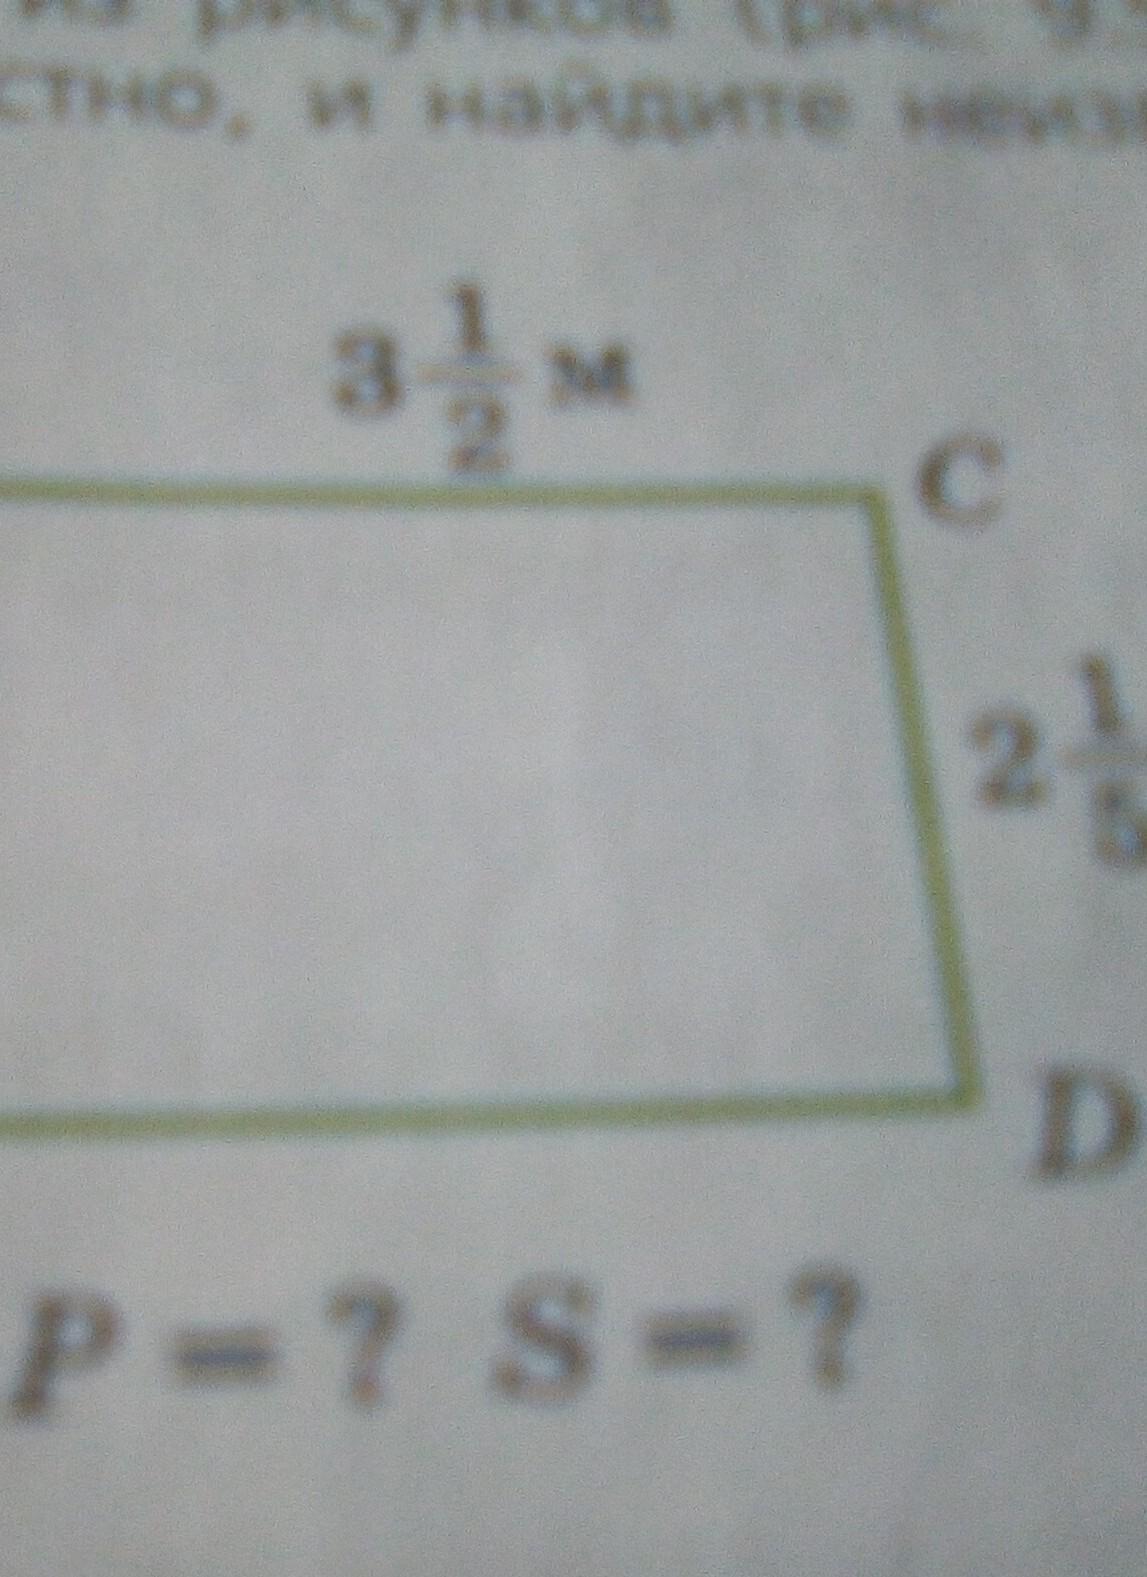 Периметр прямоугольника 56 диагональ 27 найдите площадь. Найти периметр прямоугольника Паскаль. Периметр прямоугольника с дыркой внутри. 3 Найти периметр и площадь фигуры на рисунке. Найди периметр число 72 72 12 82 меньше 62 42 52.